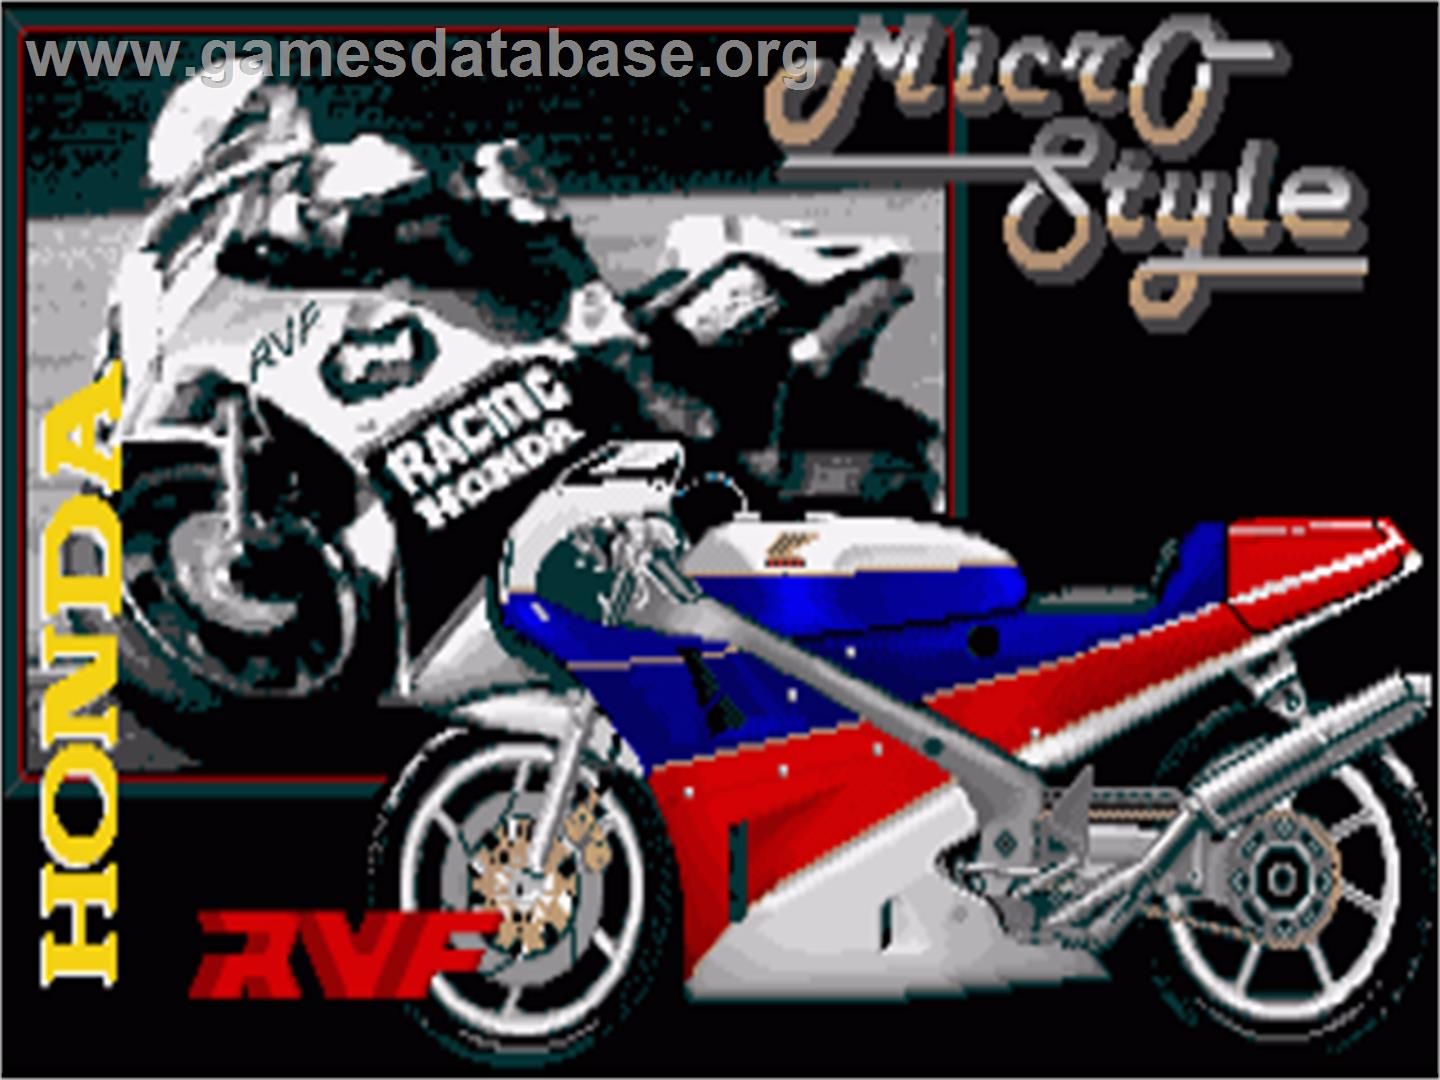 RVF Honda - Commodore Amiga - Artwork - Title Screen